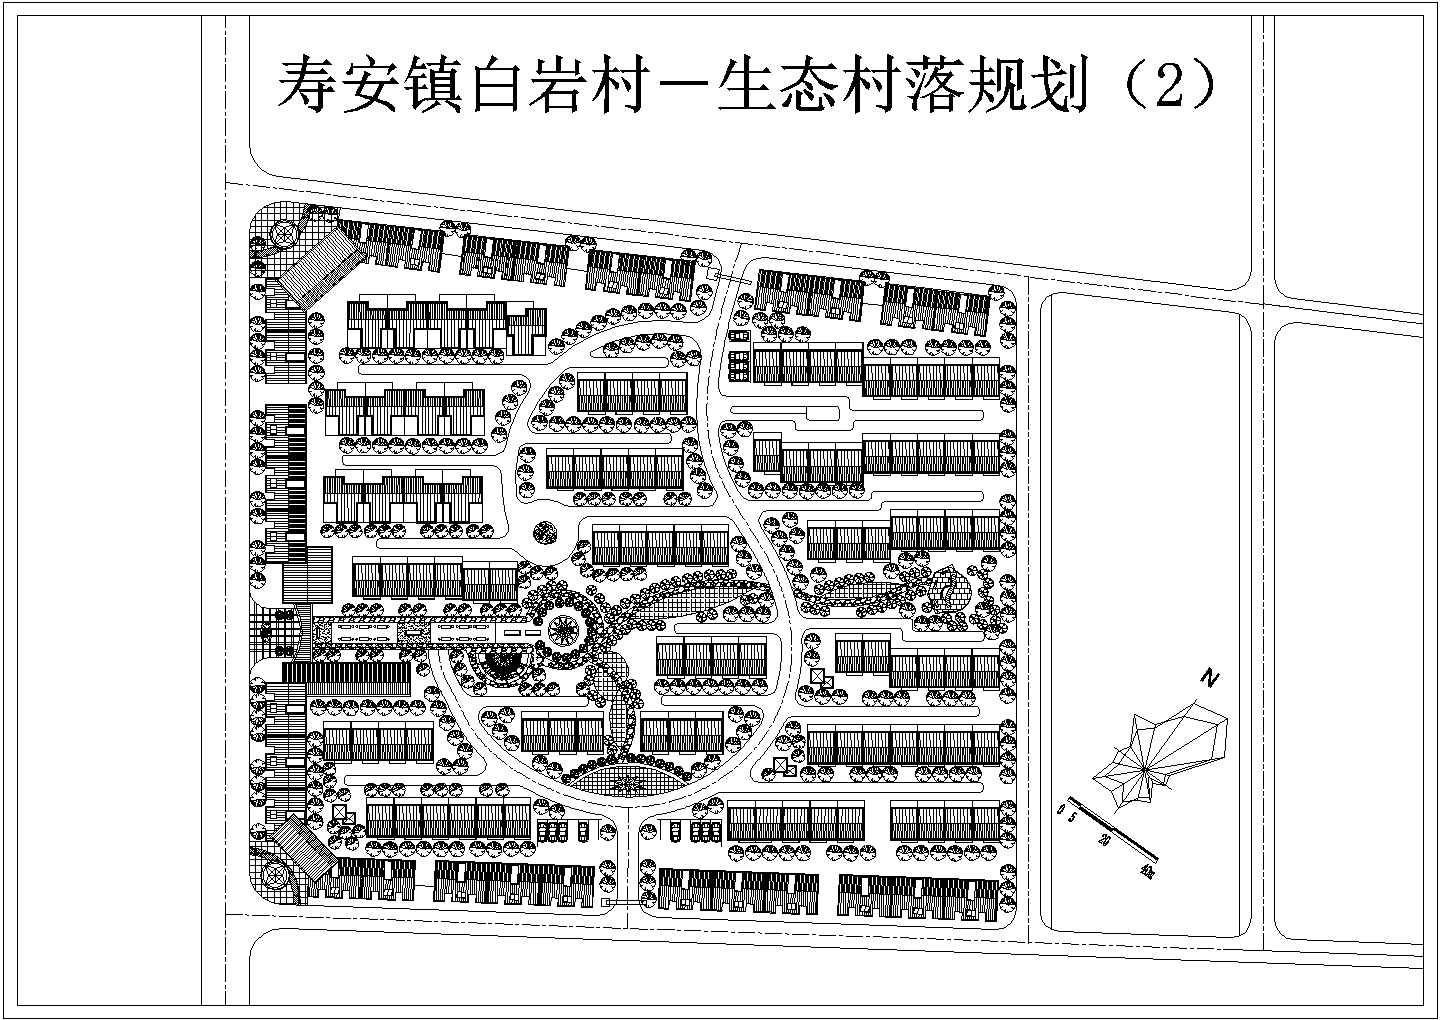 寿安镇白岩村生态村落全套规划设计图